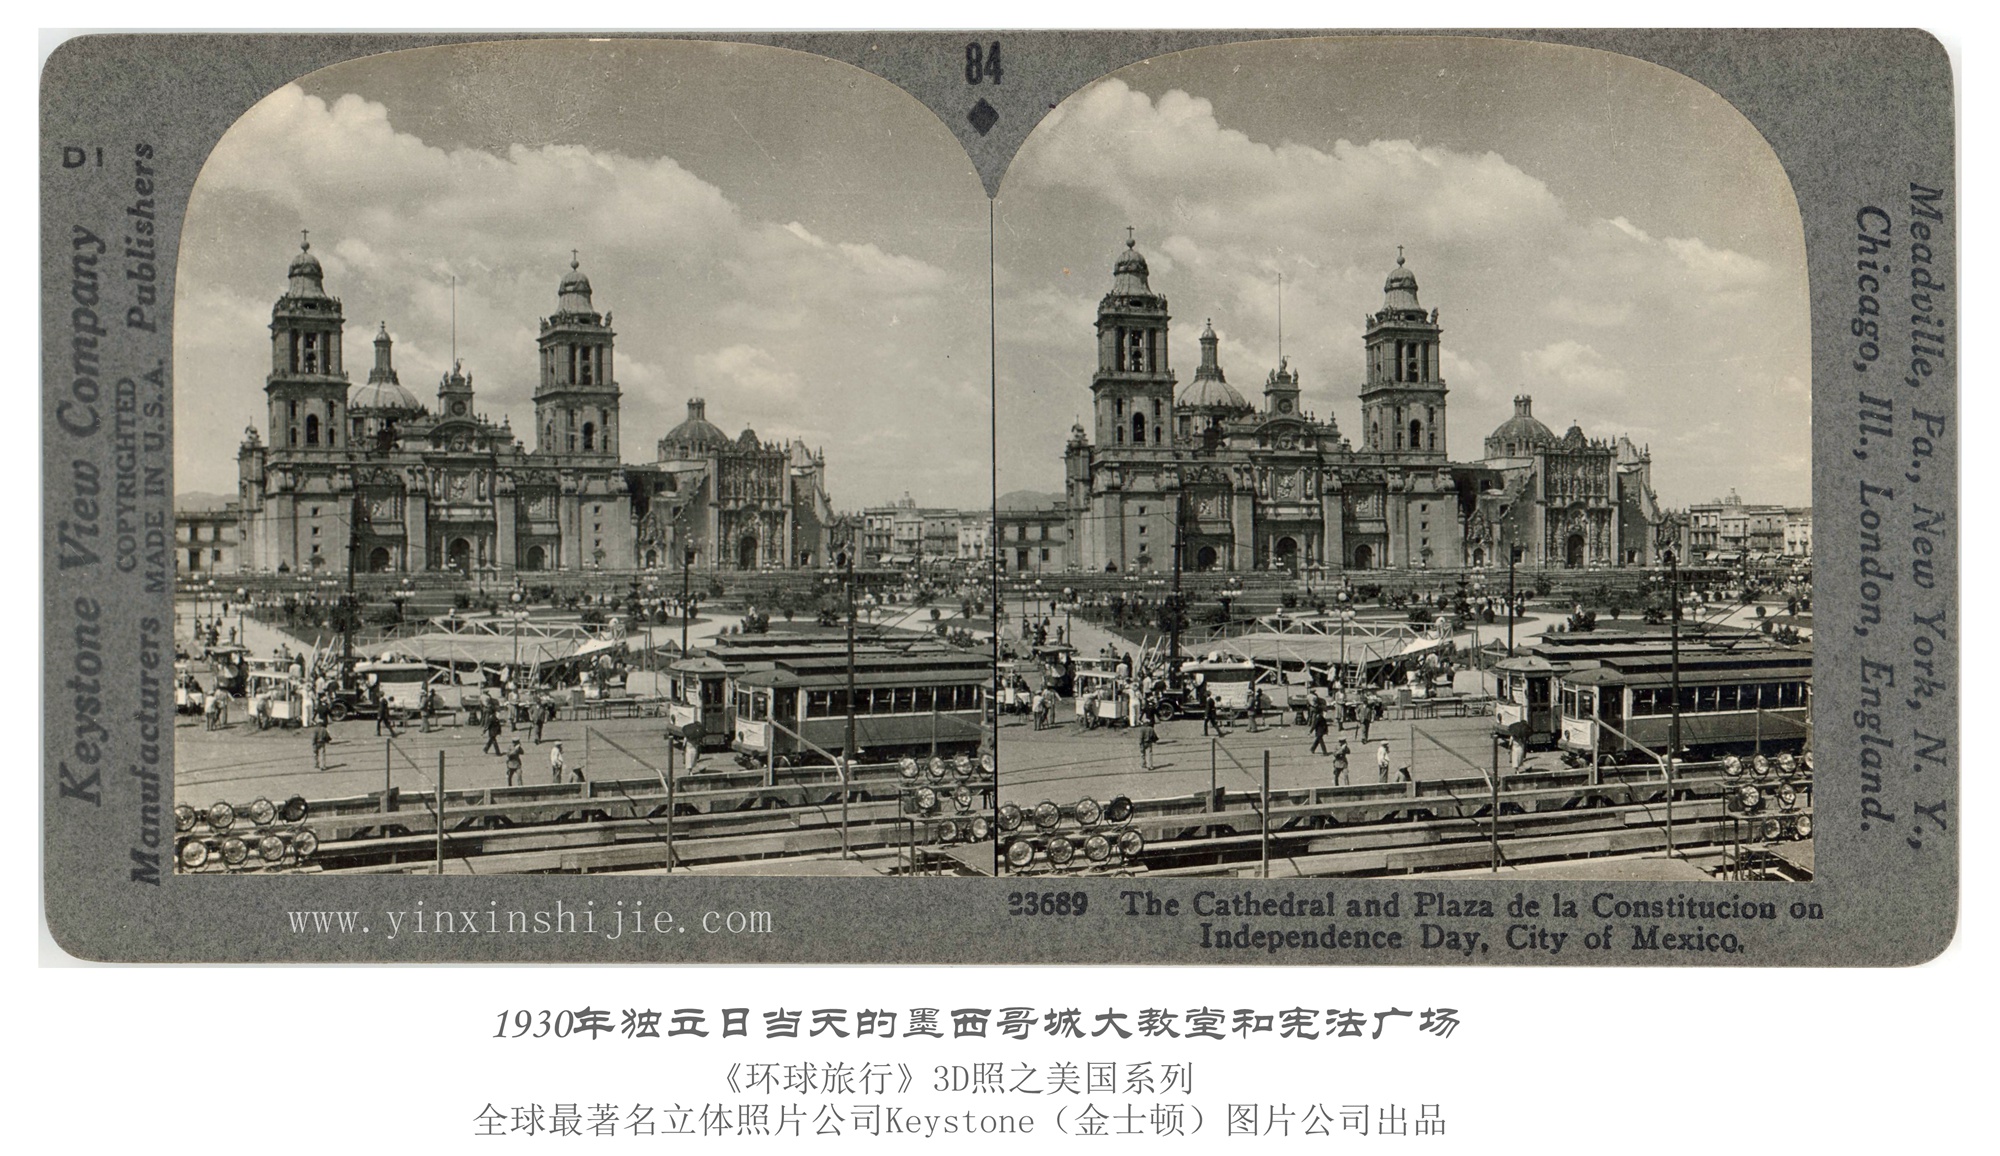 1930年独立日当天的墨西哥城大教堂和宪法广场-1936年3D版《环球旅行》